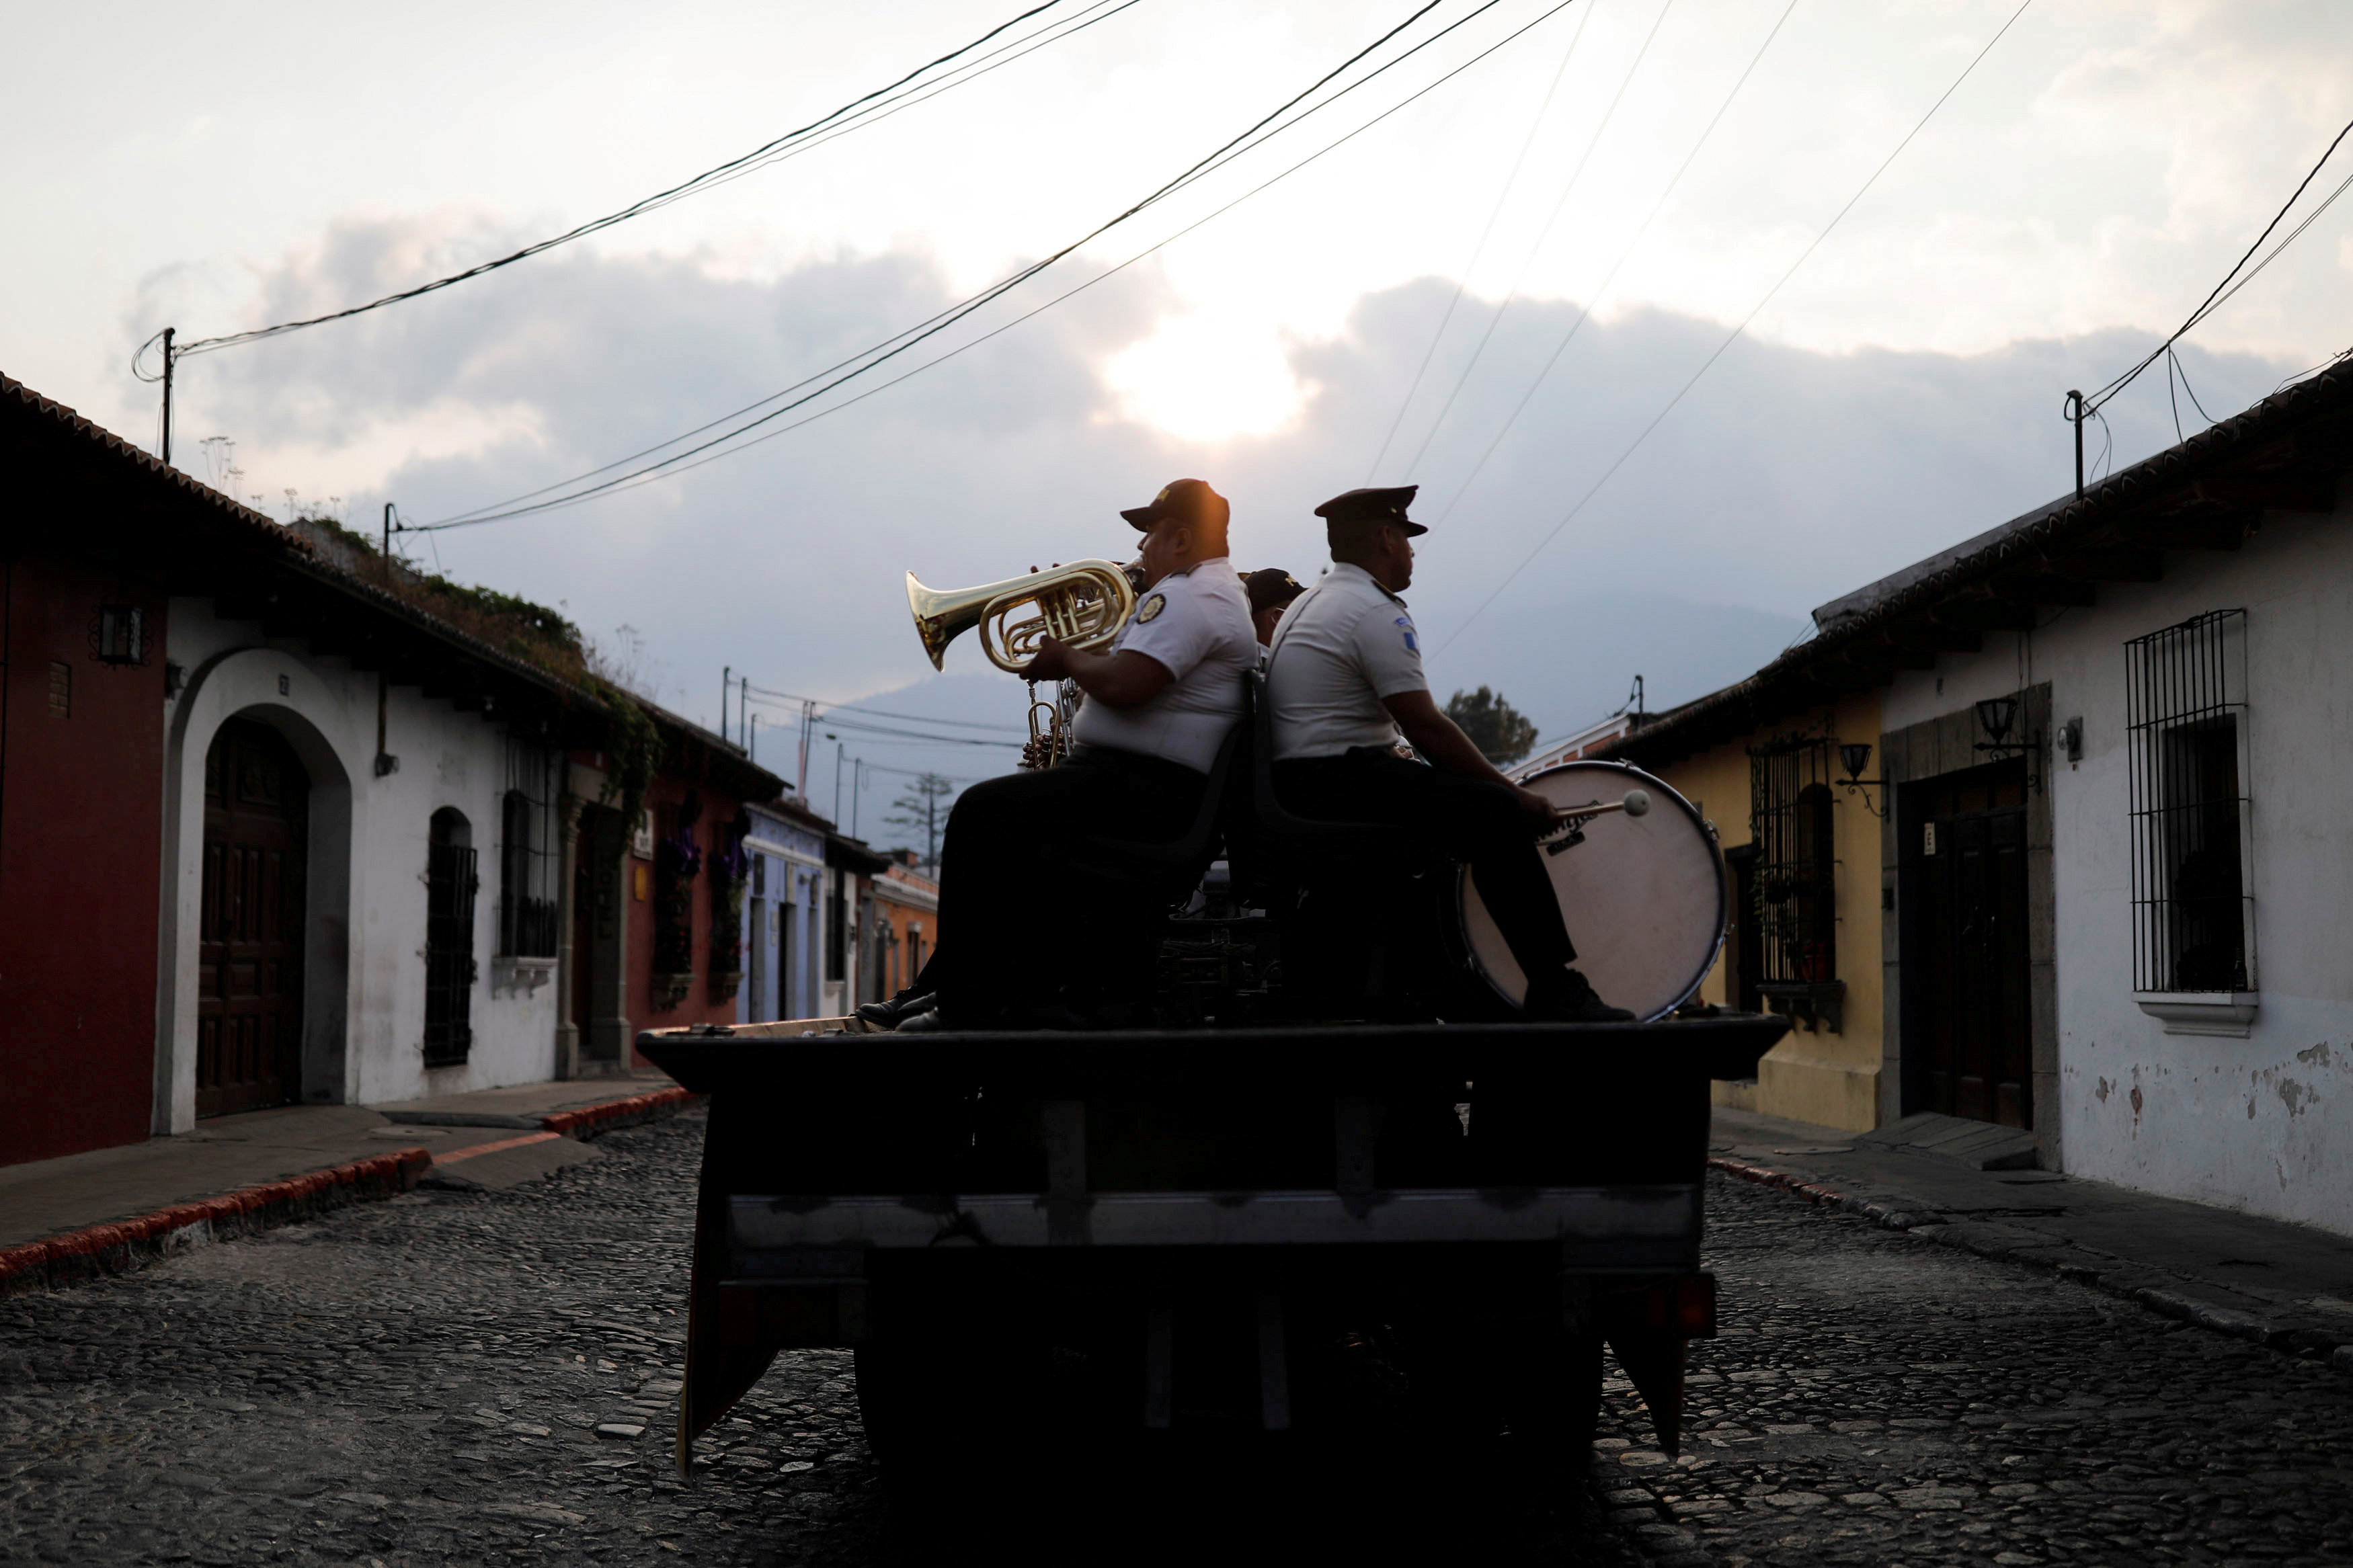 الفرقة الموسيقية التابعة للشرطة تقدم عروضا في الشارع في جواتيمالا سيتي  (3)